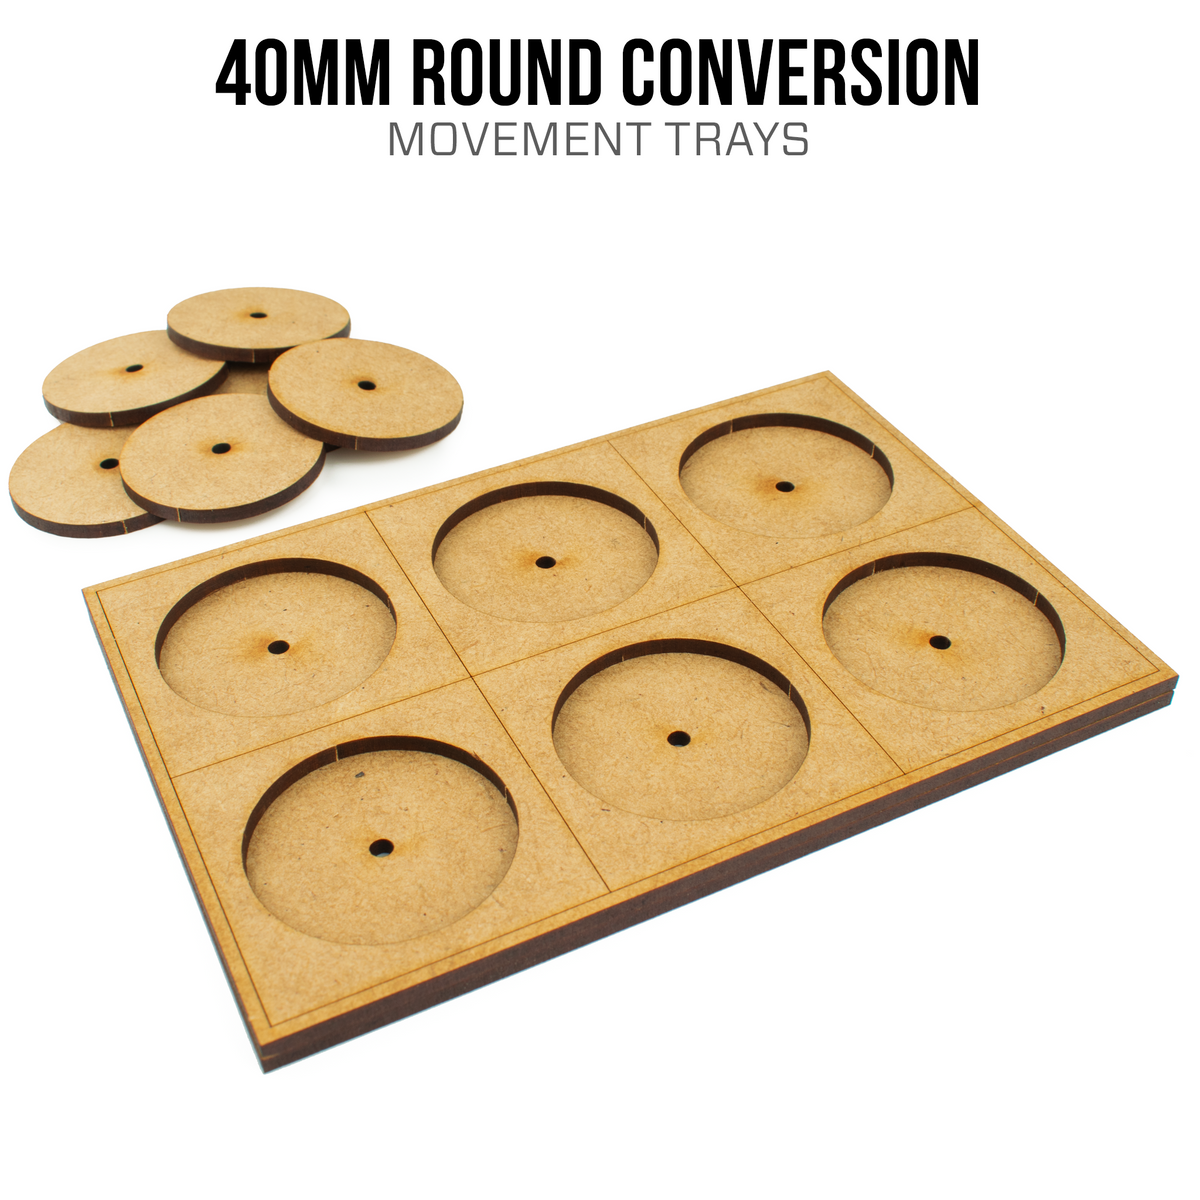 Bandejas de conversión redondas de 40 mm